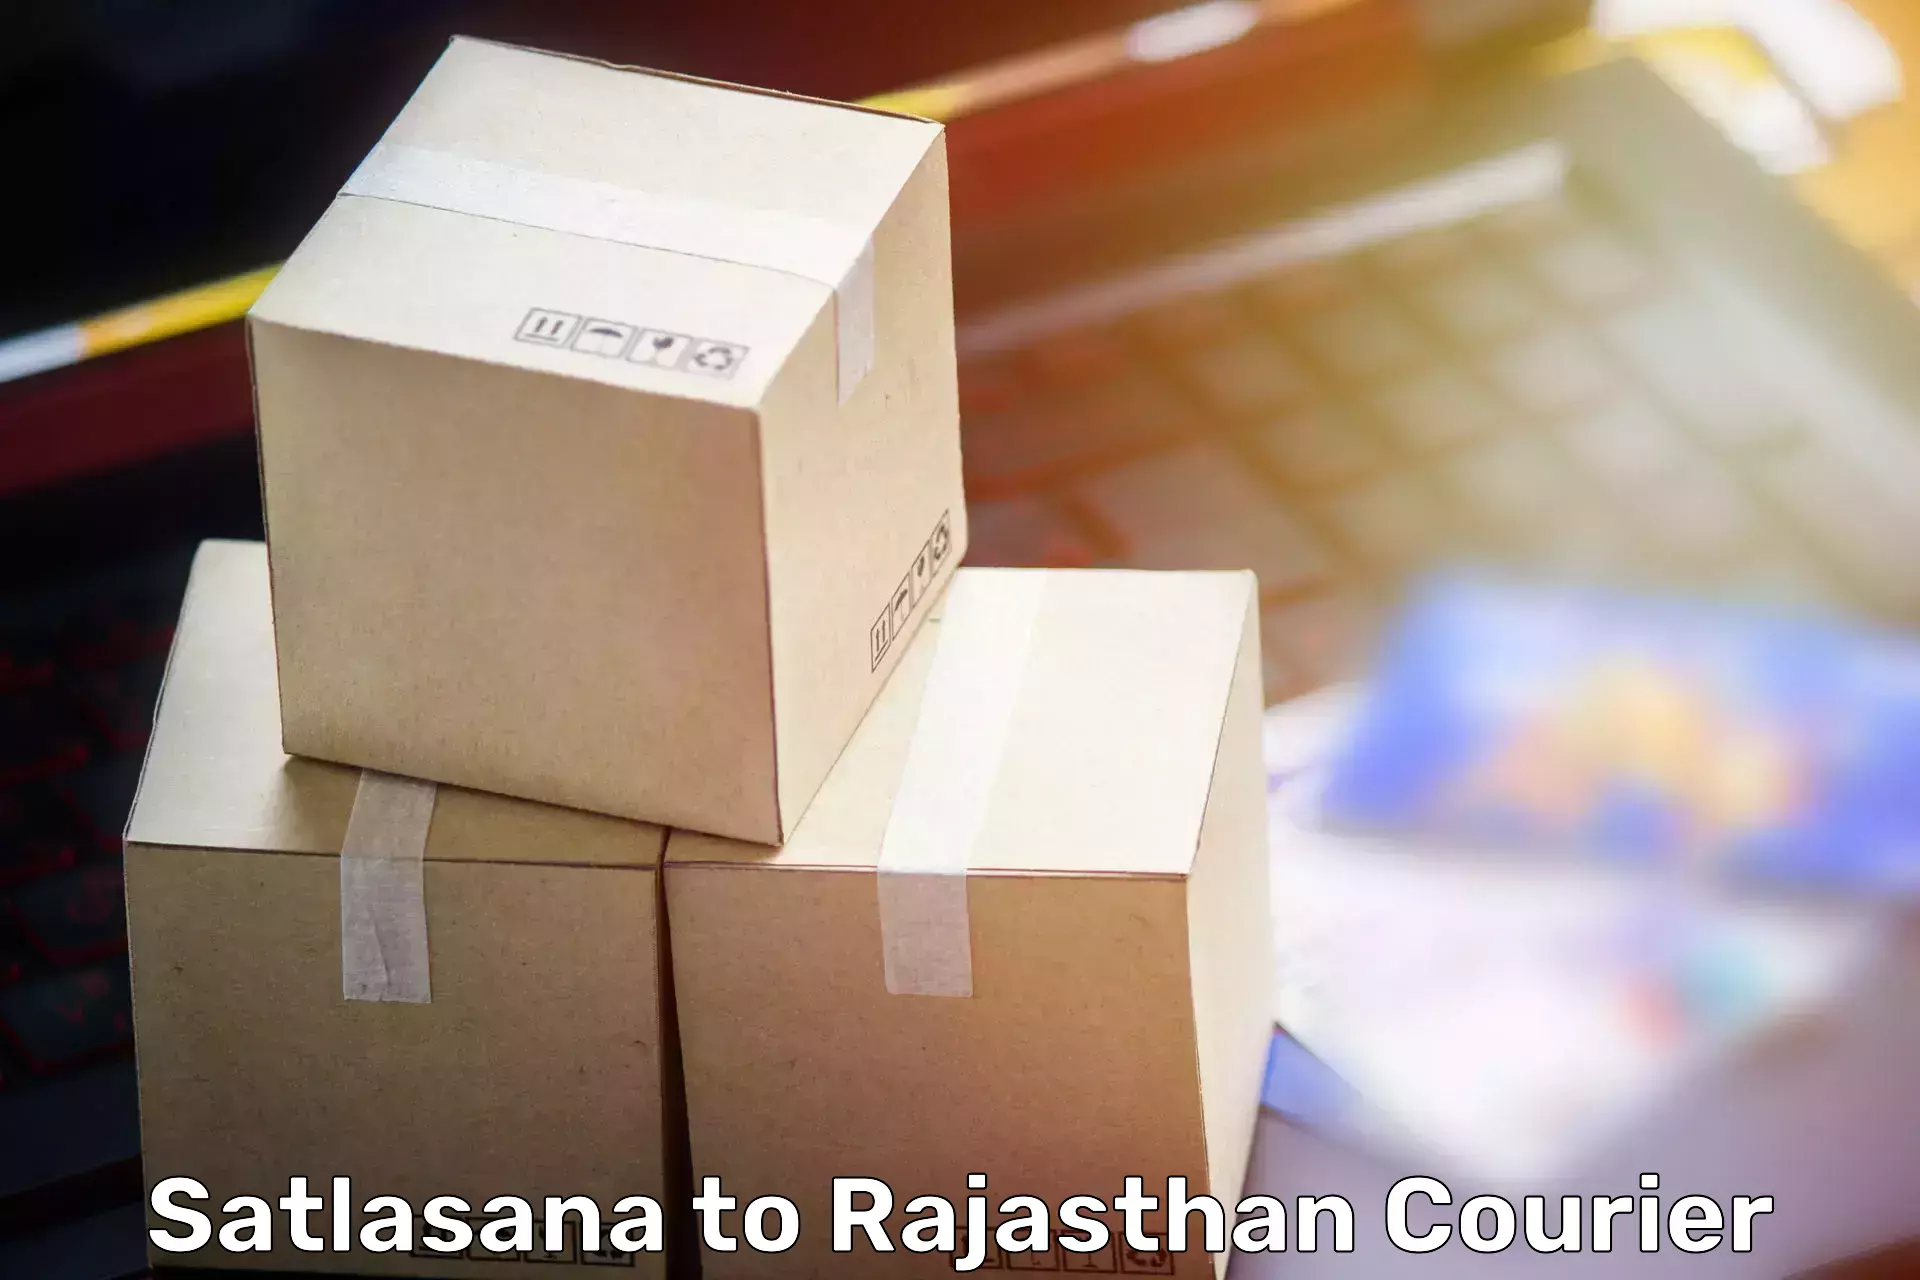 Furniture moving service Satlasana to Banswara